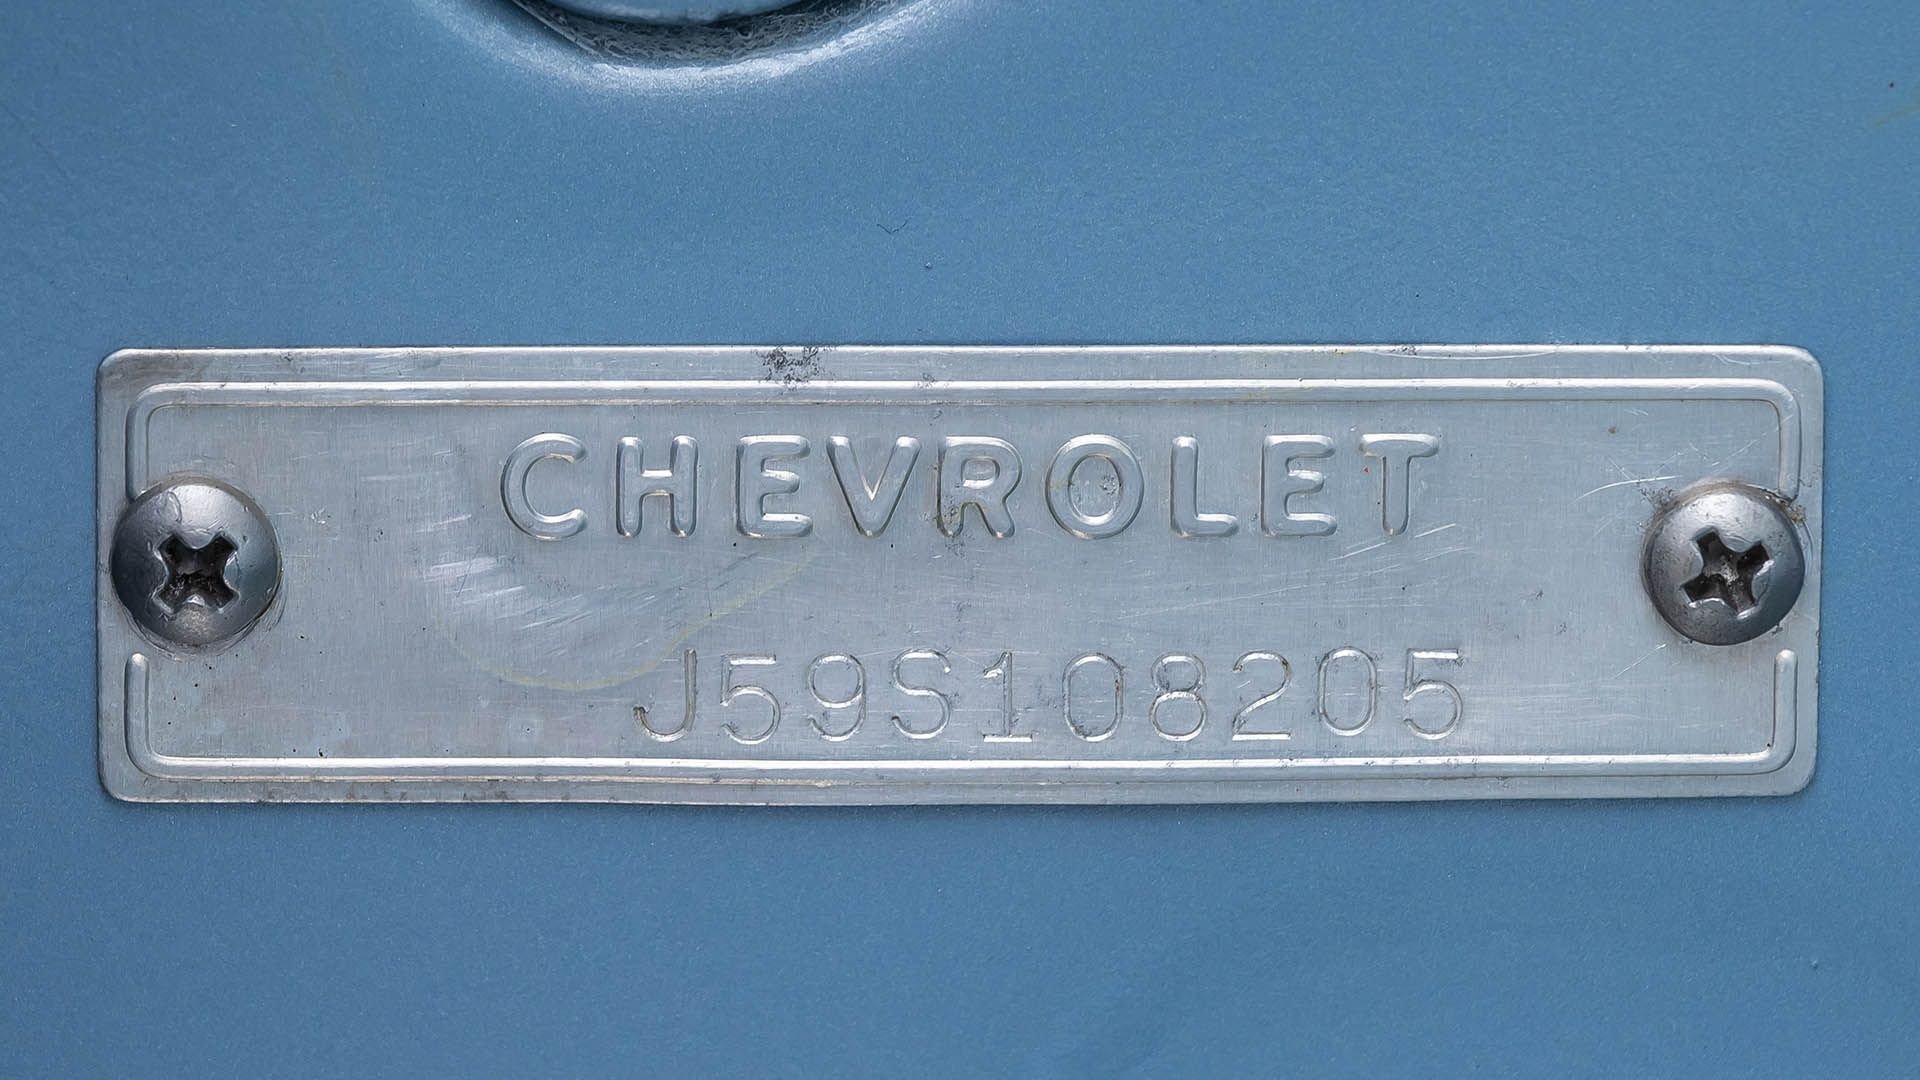 For Sale 1959 Chevrolet Corvette